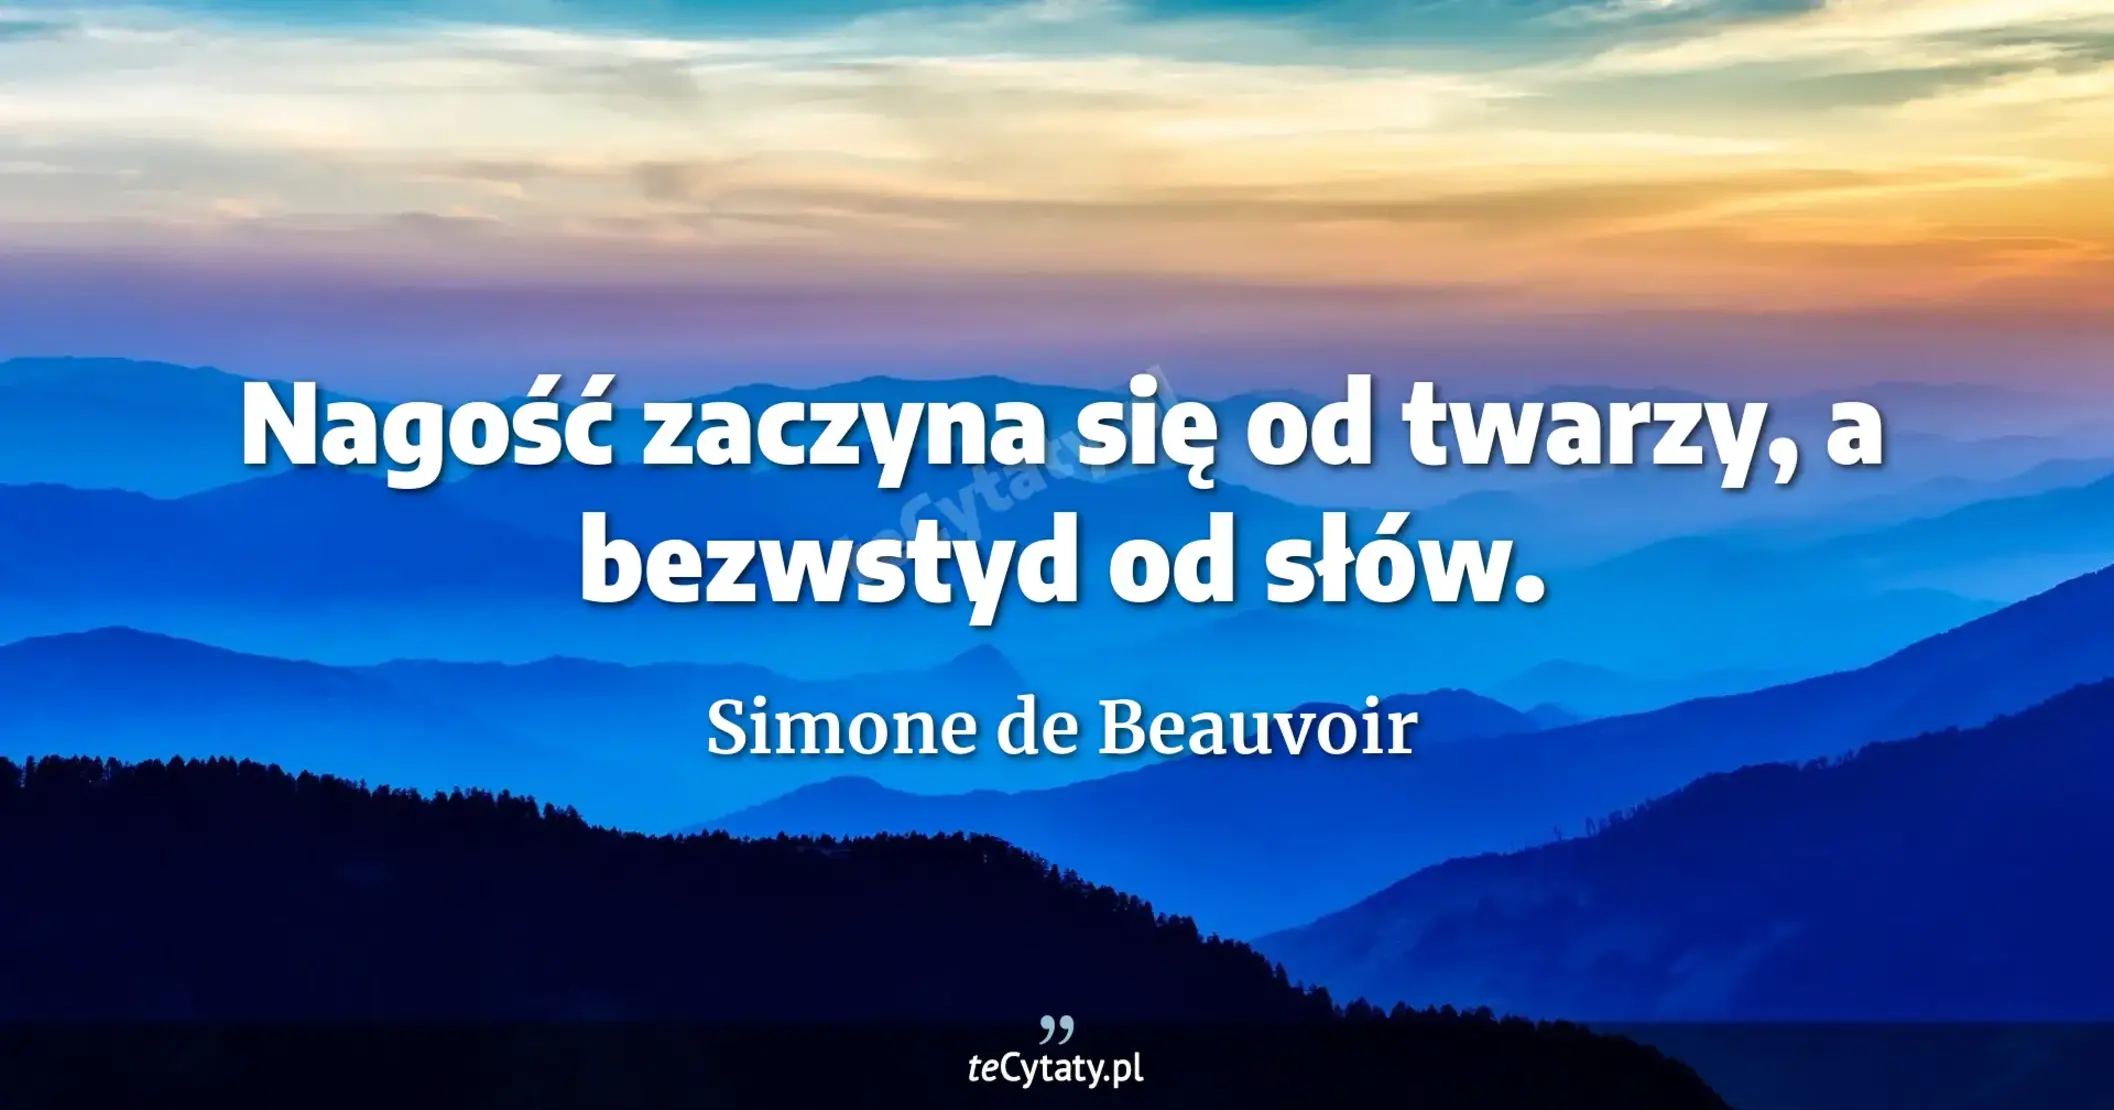 Nagość zaczyna się od twarzy, a bezwstyd od słów. - Simone de Beauvoir